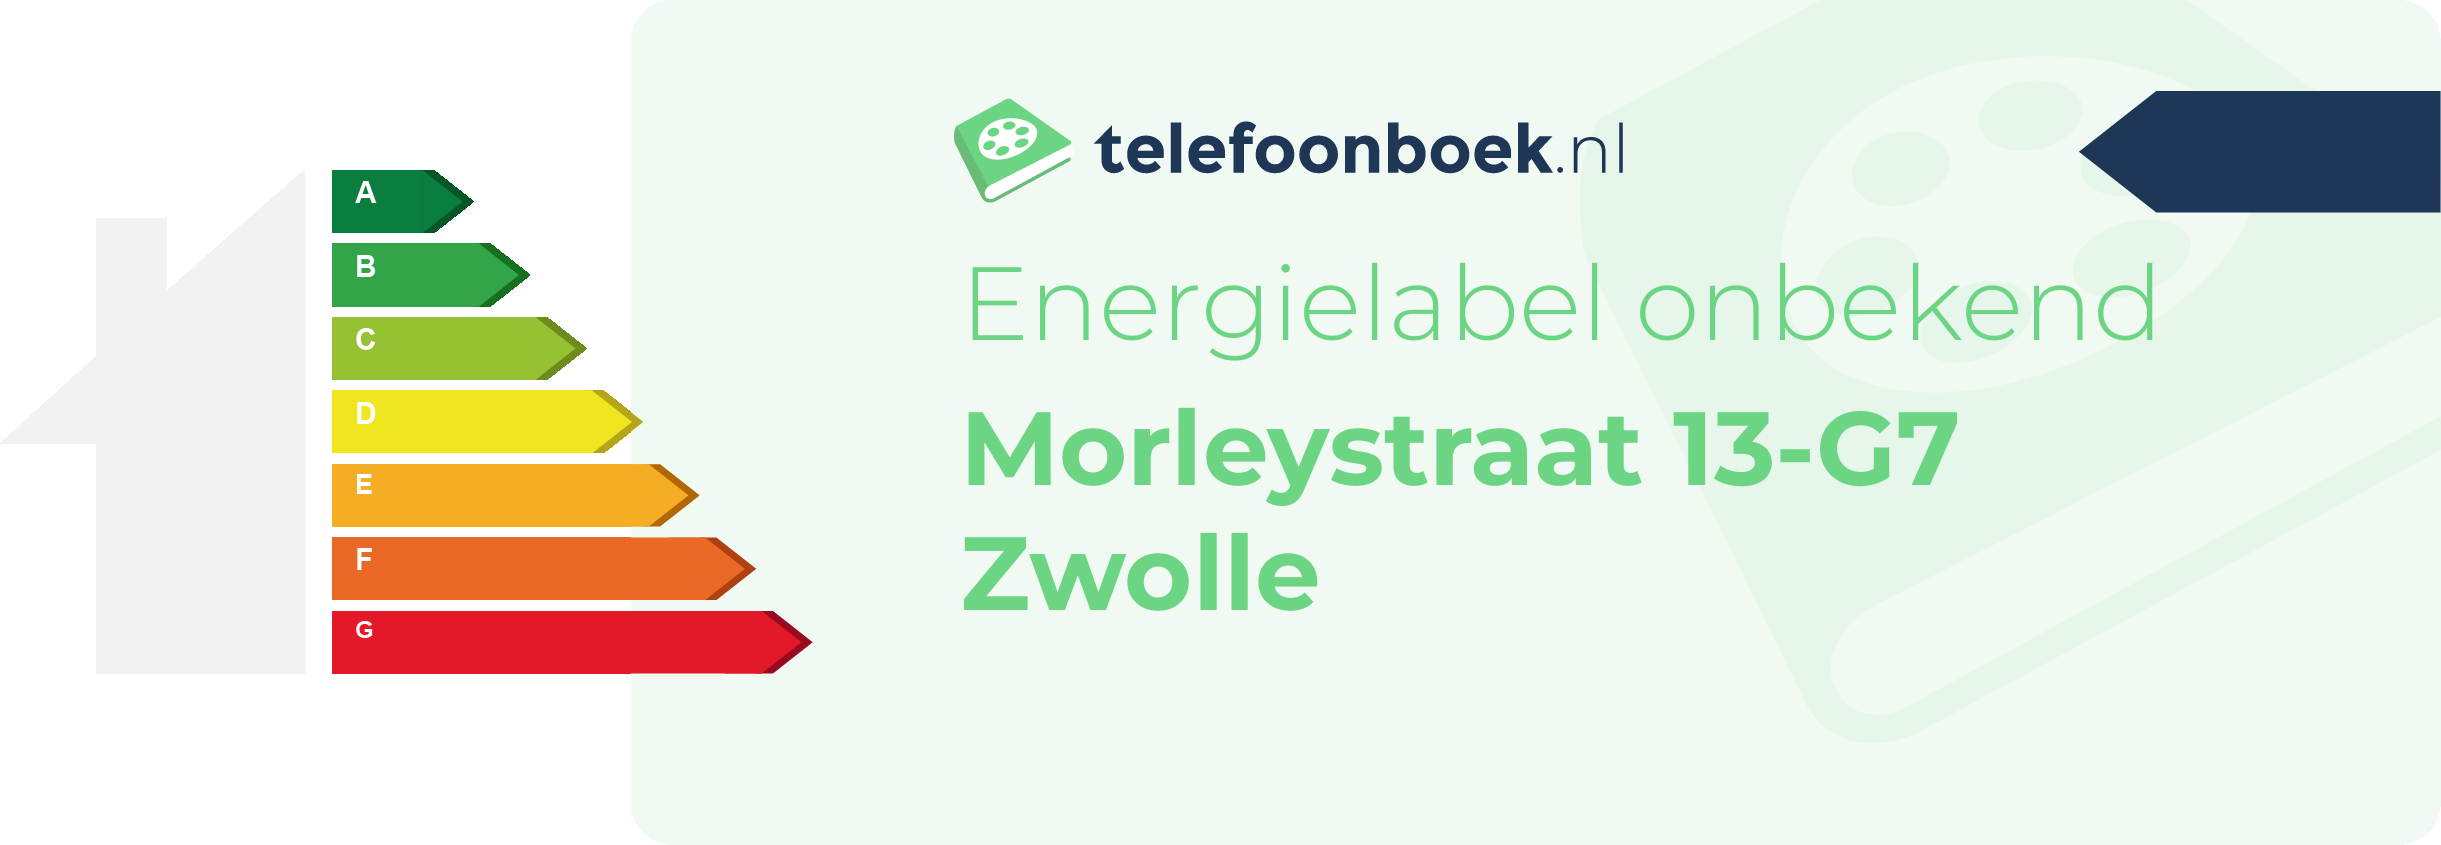 Energielabel Morleystraat 13-G7 Zwolle